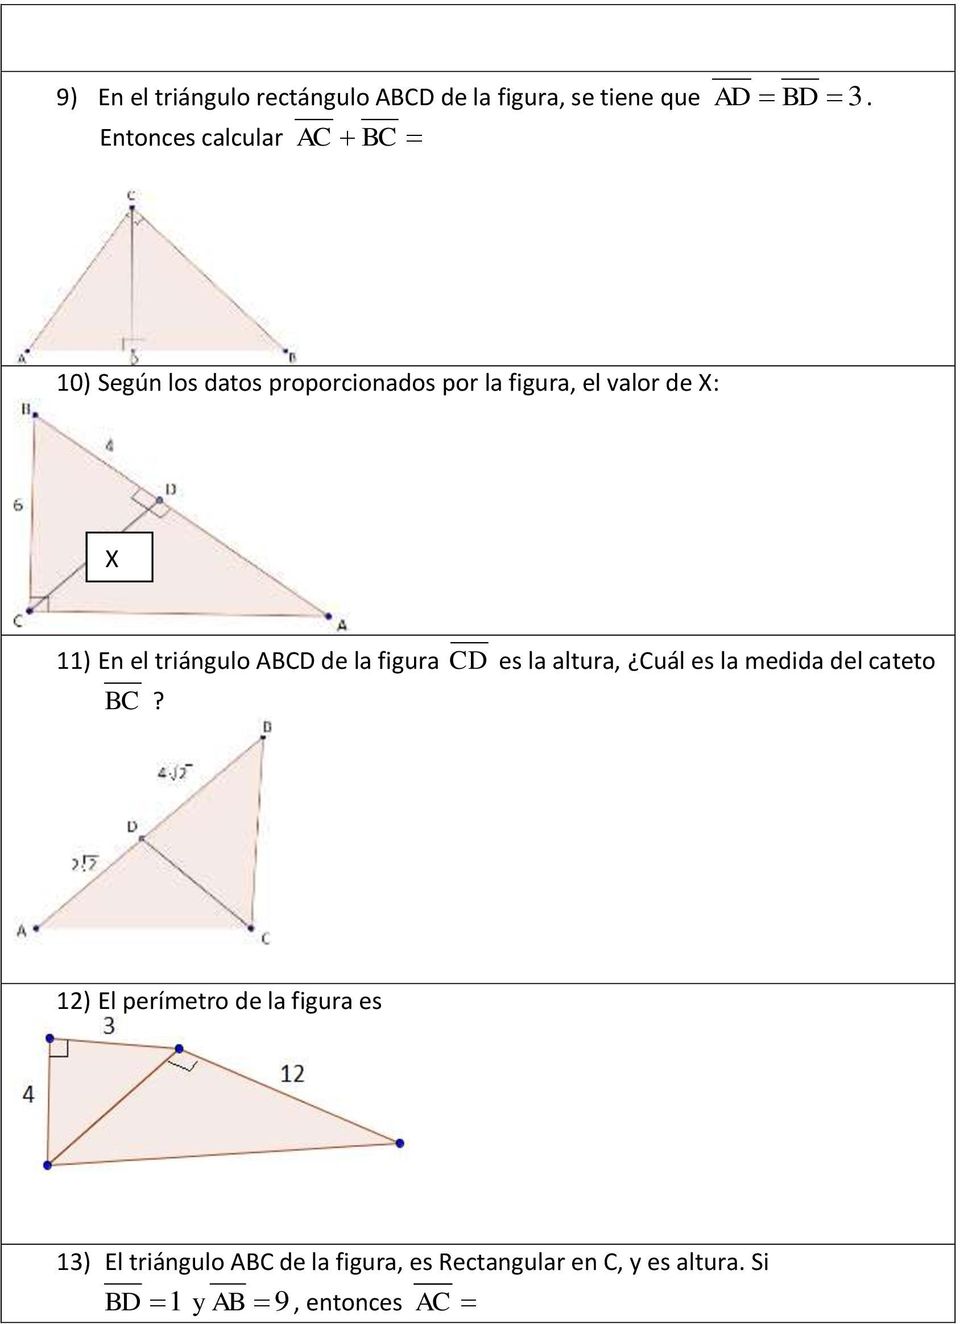 En el triángulo ABCD de la figura CD es la altura, Cuál es la medida del cateto BC?